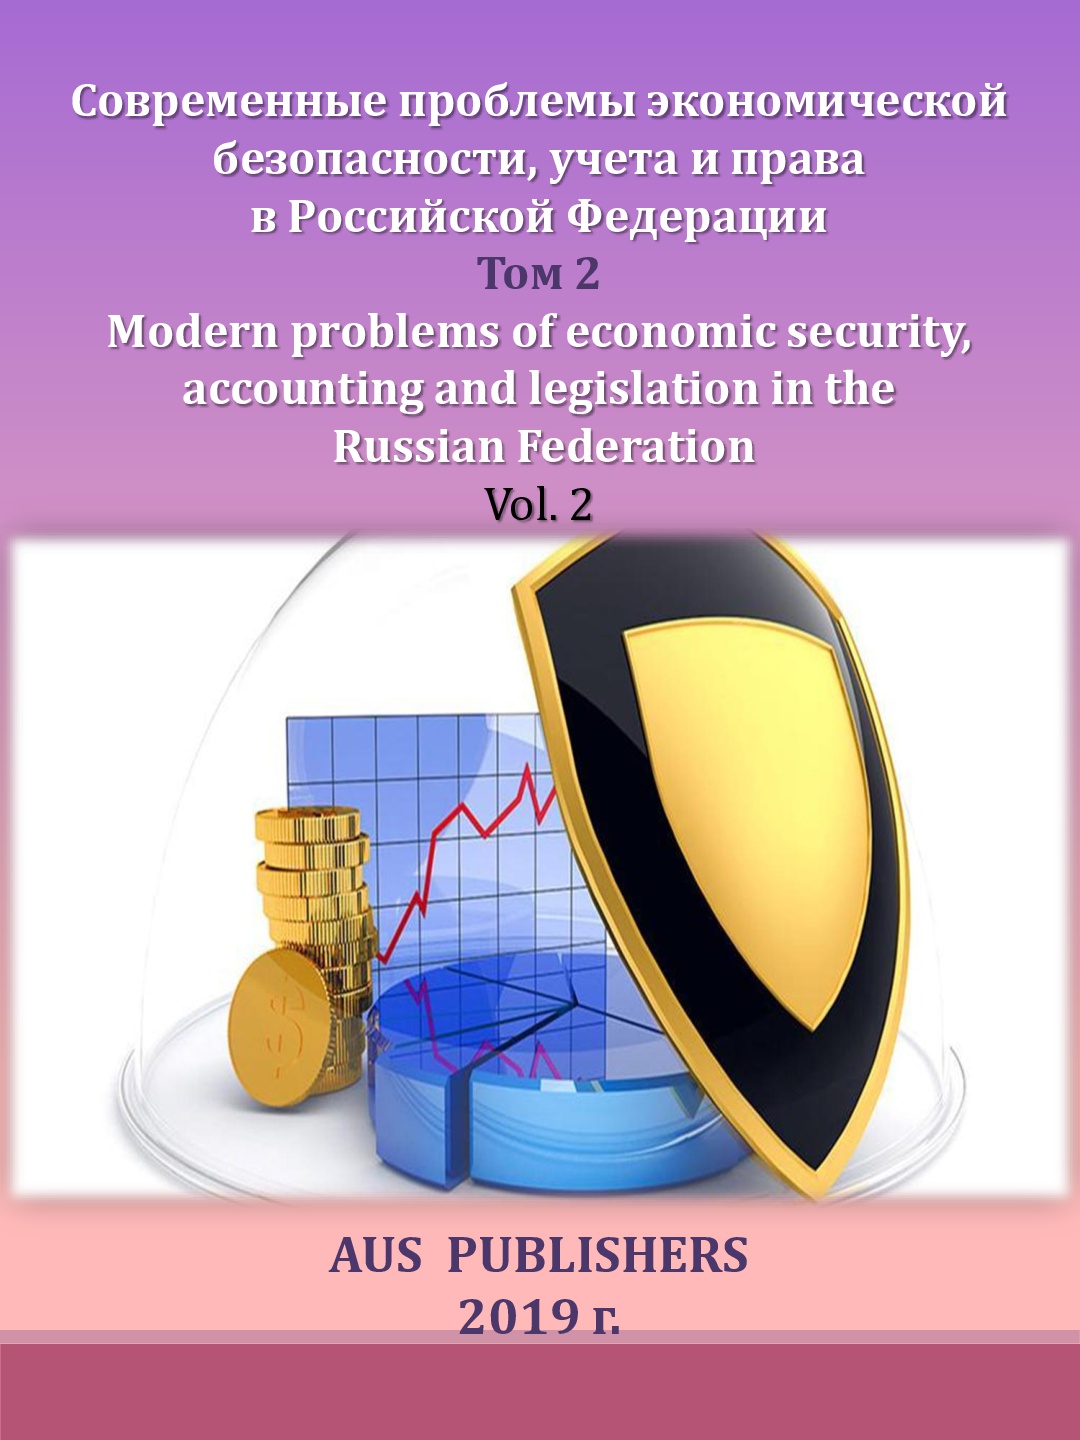             Современные проблемы экономической безопасности, учета и права в Российской Федерации. Том 2
    